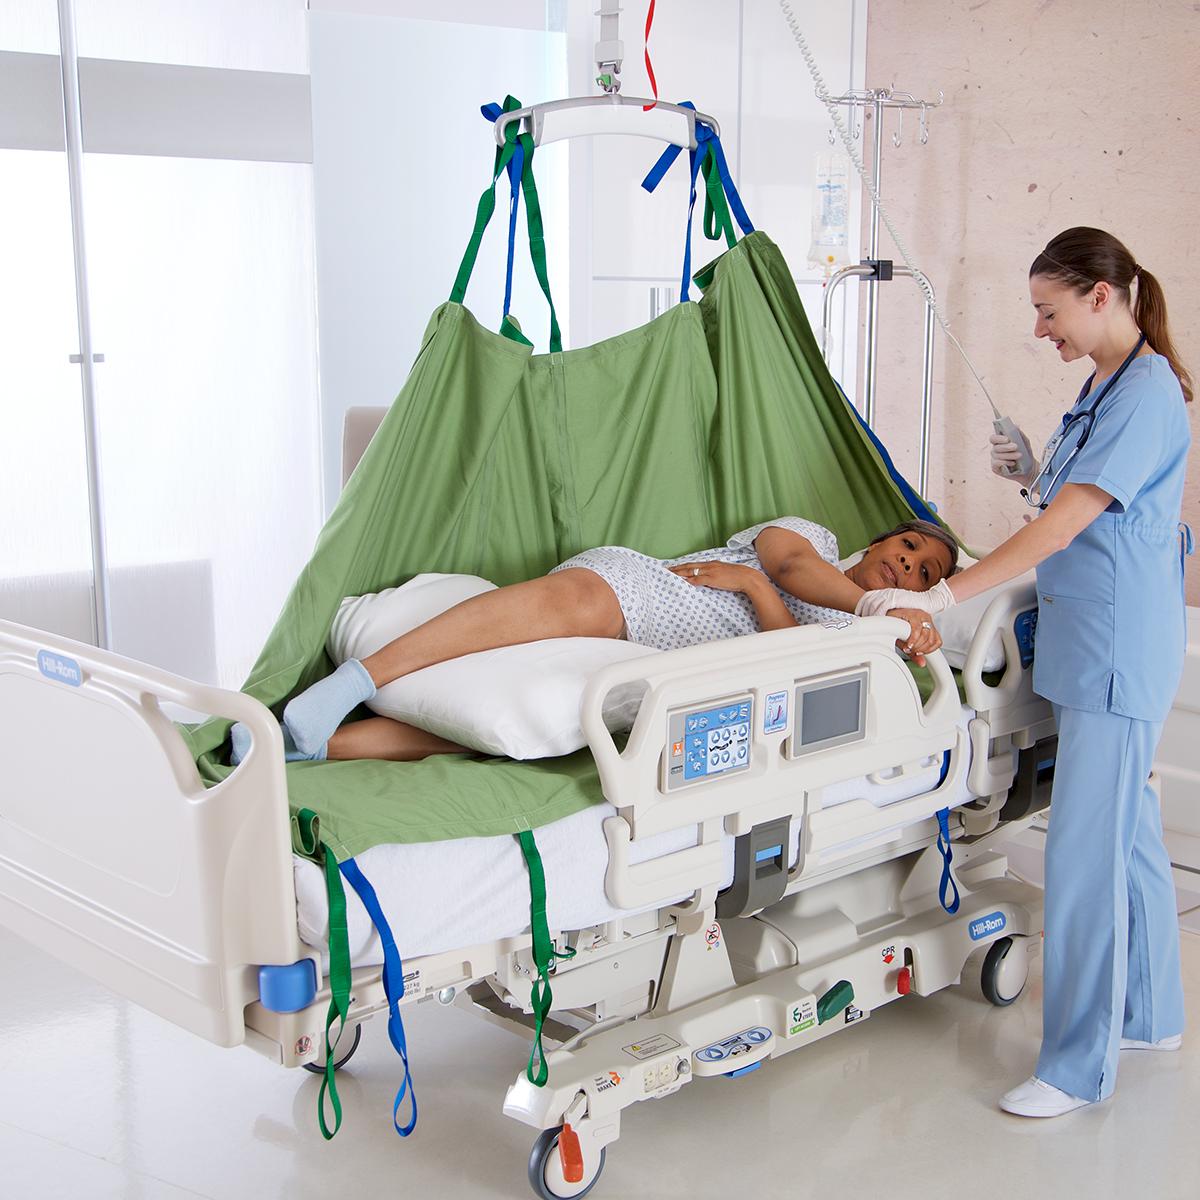 Un clinico utilizza un sollevatore a soffitto Hillrom e Repo Sheet per riposizionare una paziente nel suo letto ospedaliero